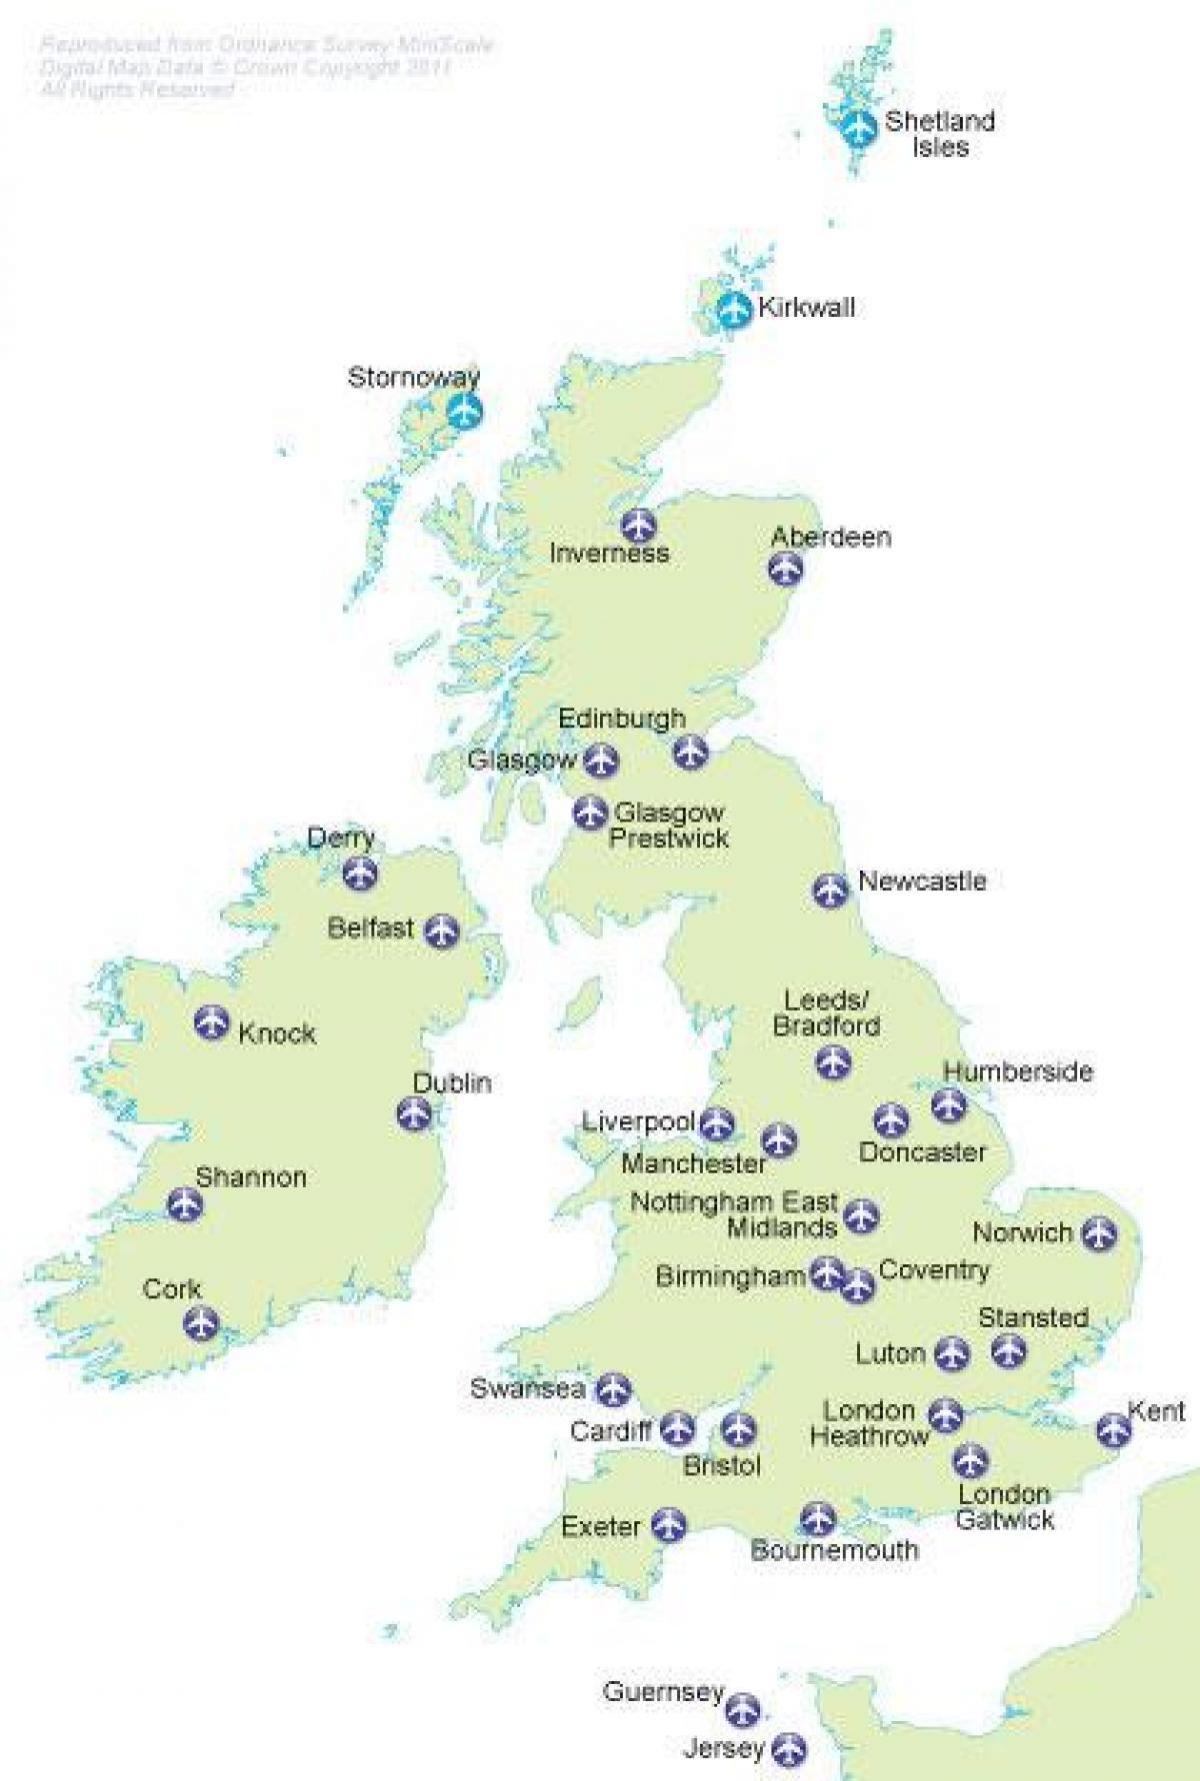 Mappa degli aeroporti del Regno Unito (UK)